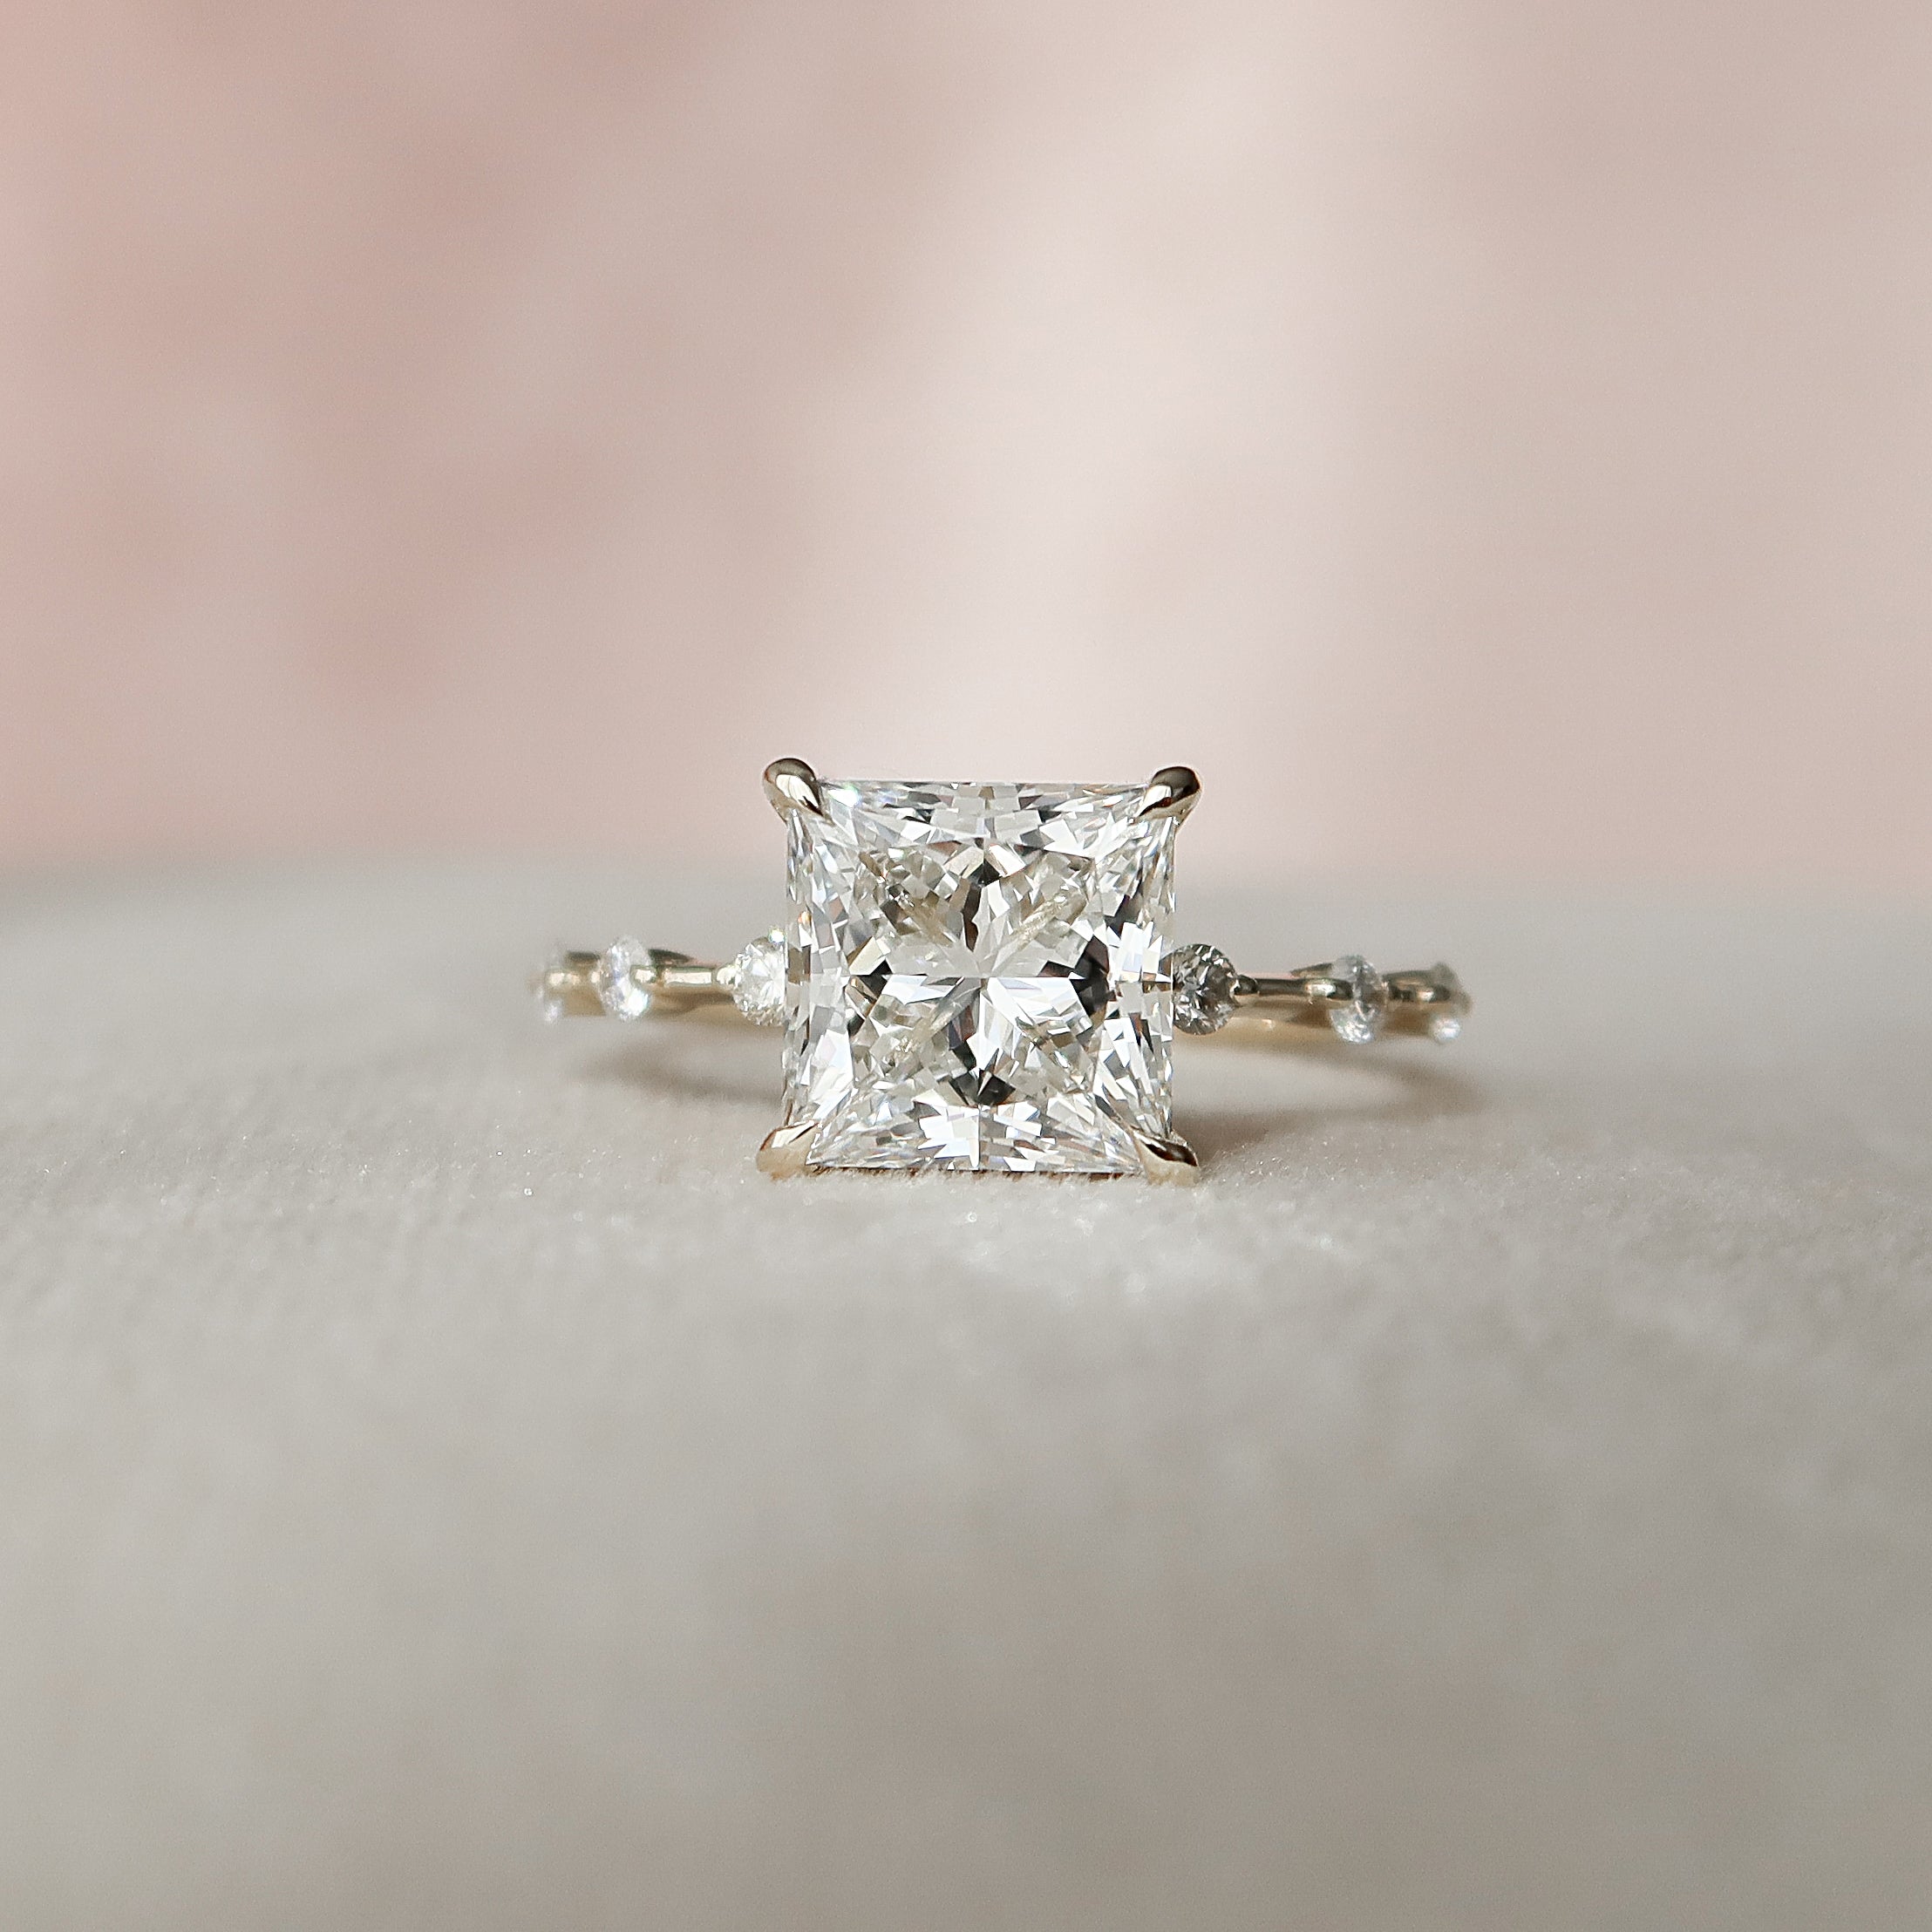 3.10 Carat Princess Cut Moissanite Engagement Ring Set 14k White Gold Size  7 8 9 | eBay